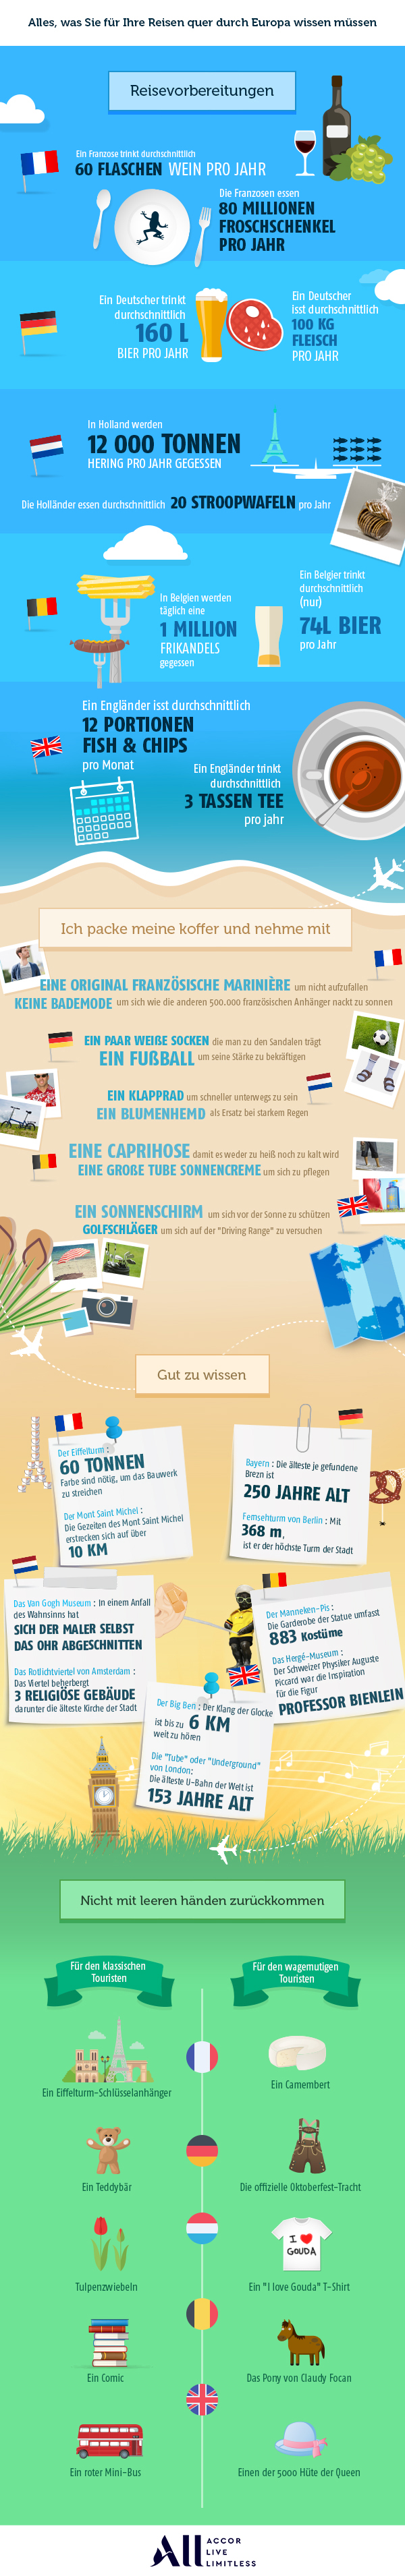 Sunny Deals Infographic: nützliche und interessante Informationen rund um das Thema Sommerurlaub!